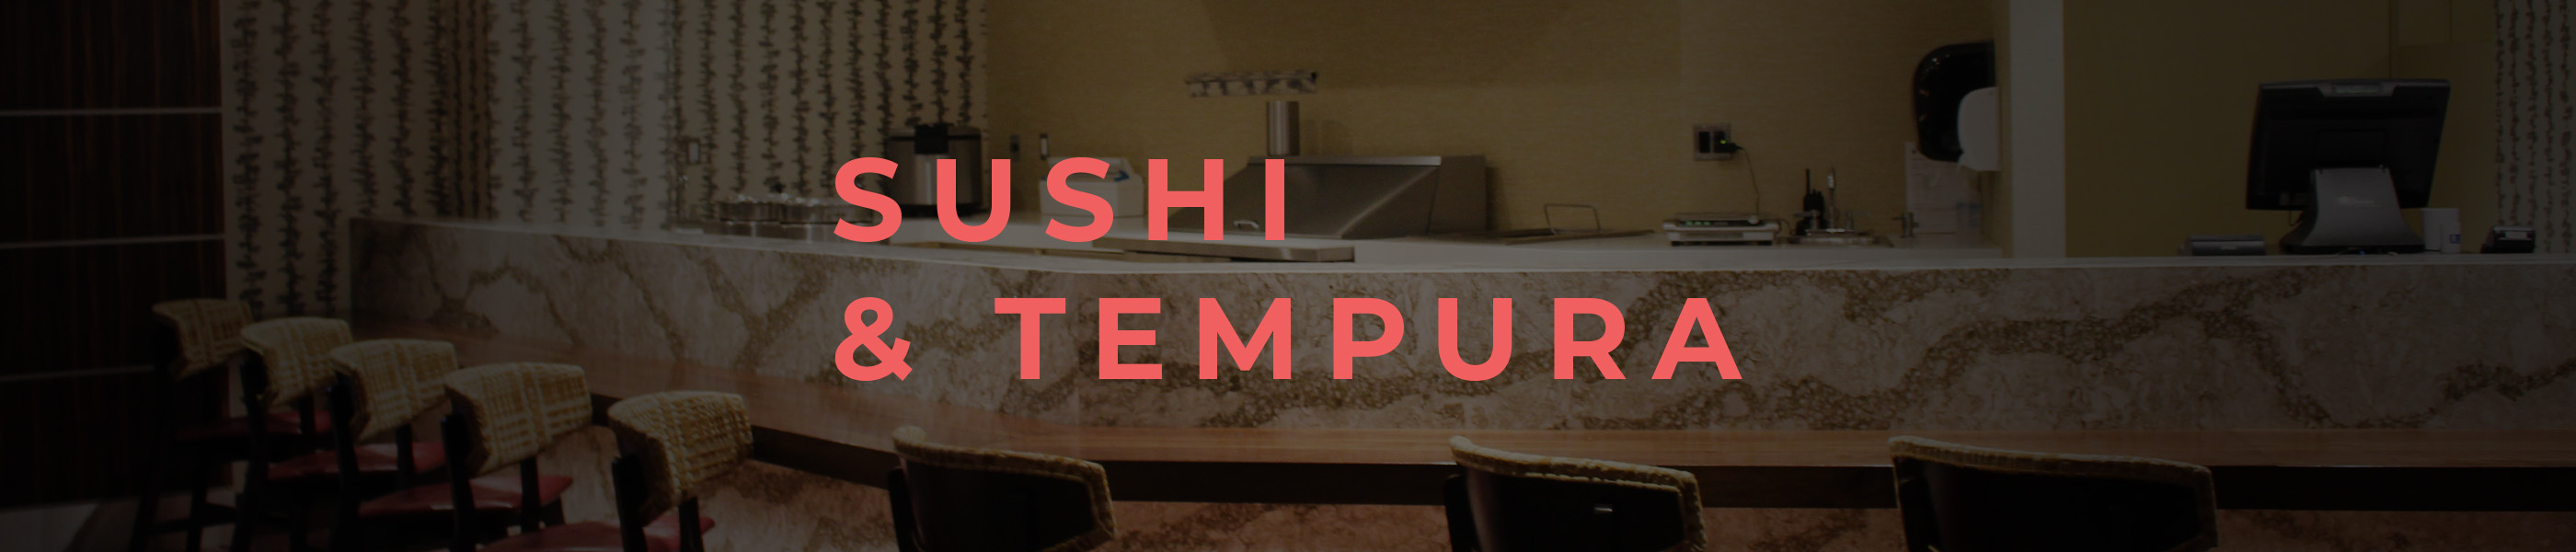 Sushi and Tempura Bar